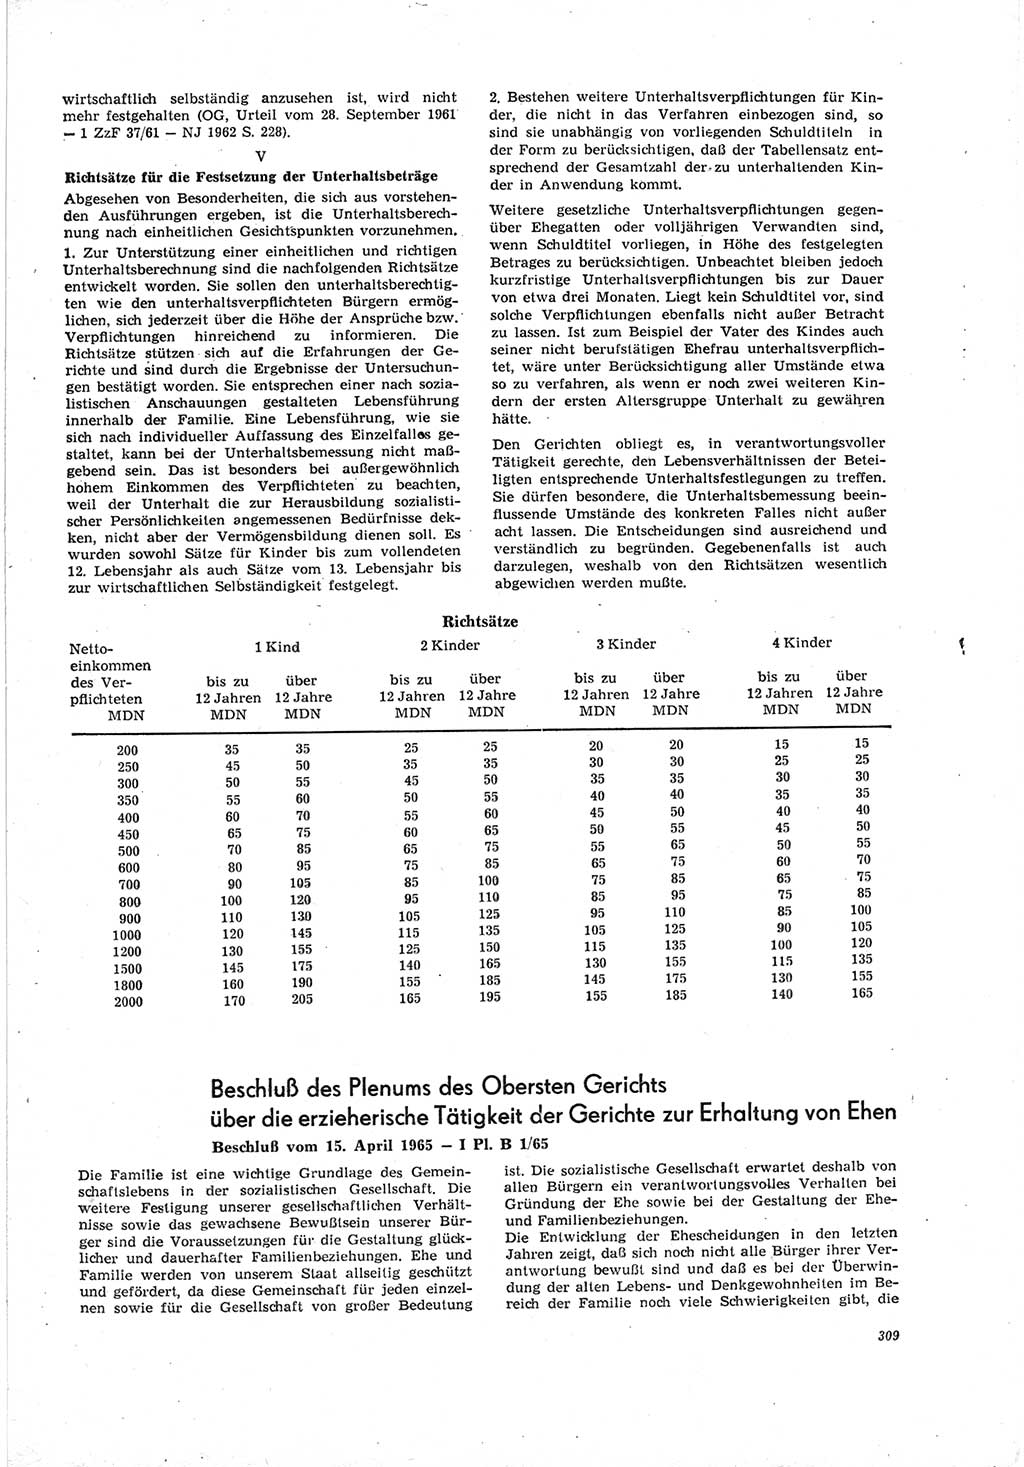 Neue Justiz (NJ), Zeitschrift für Recht und Rechtswissenschaft [Deutsche Demokratische Republik (DDR)], 19. Jahrgang 1965, Seite 309 (NJ DDR 1965, S. 309)